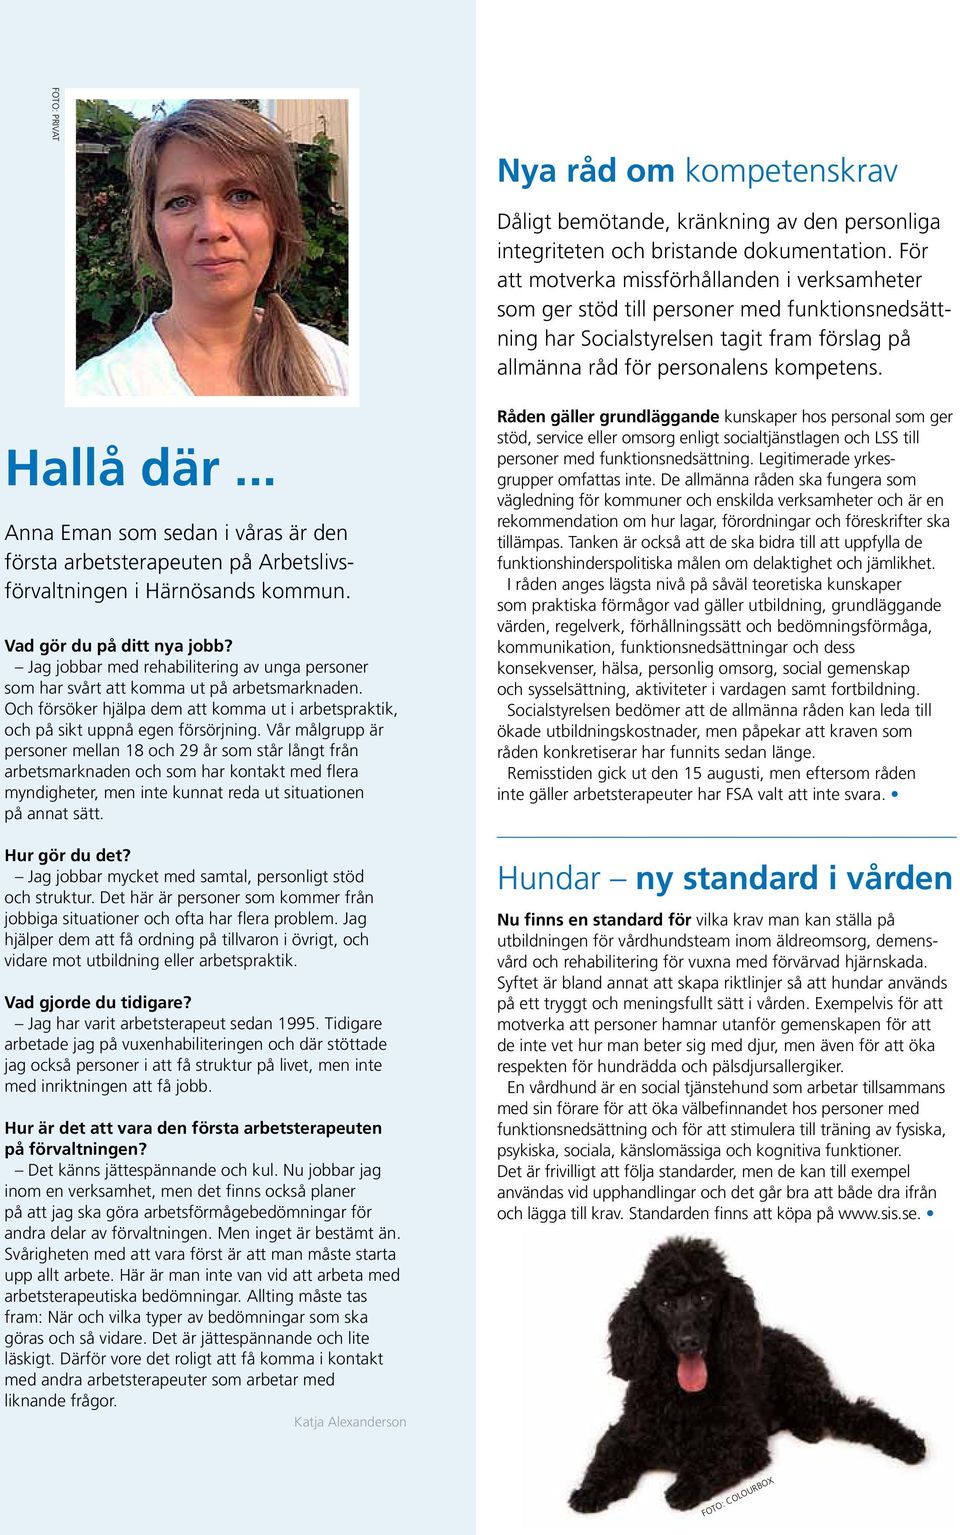 .. Anna Eman som sedan i våras är den första arbetsterapeuten på Arbetslivsförvaltningen i Härnösands kommun. Vad gör du på ditt nya jobb?